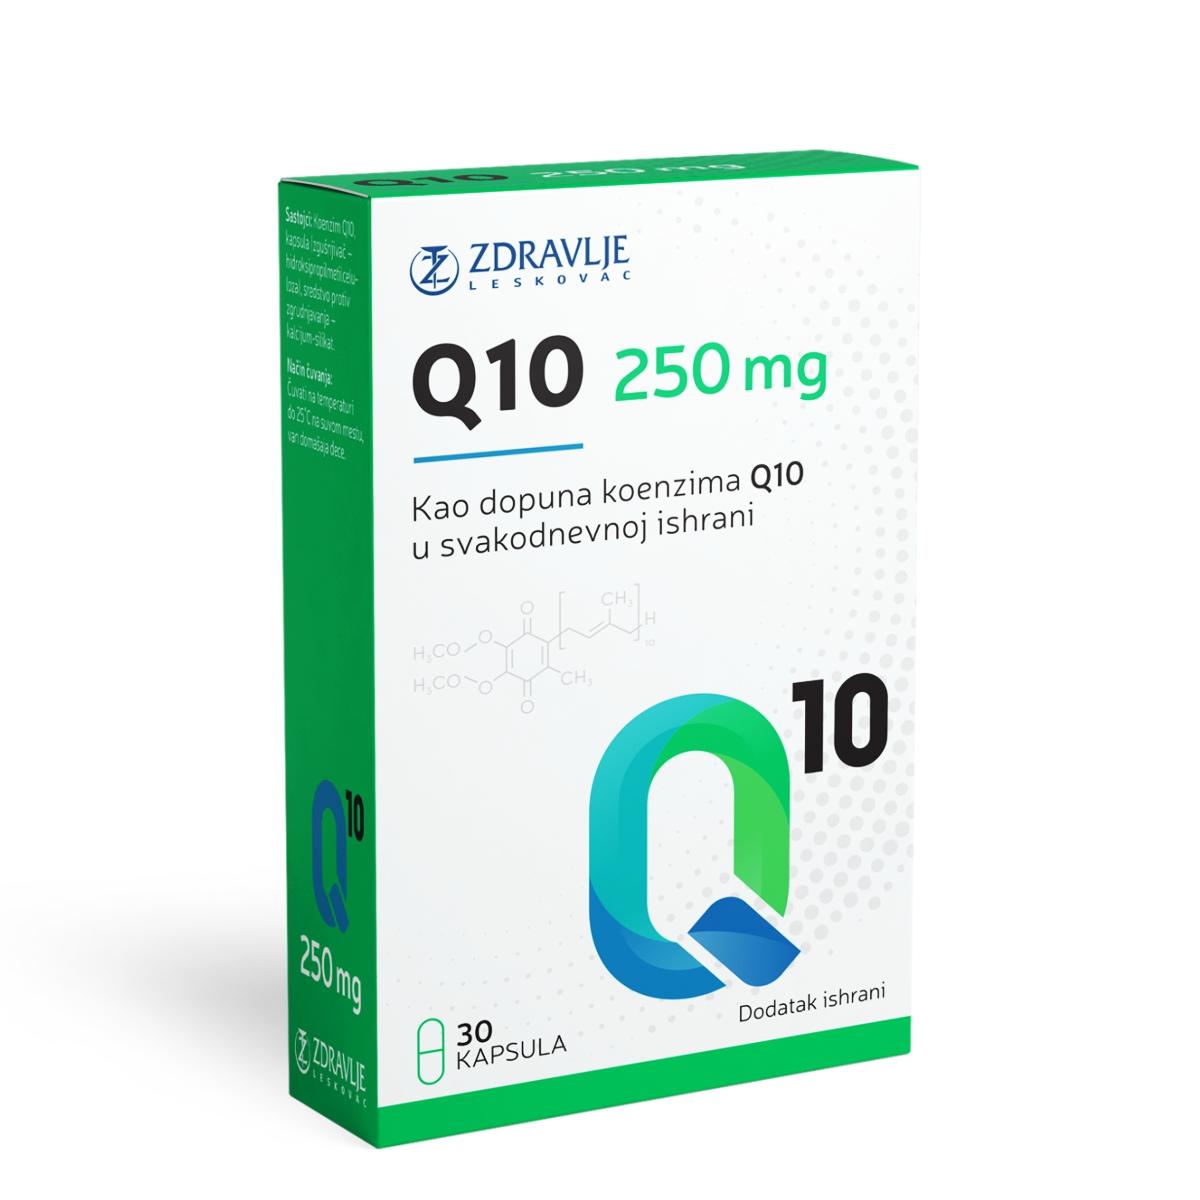 ZDRAVLJE Koenzim Q10 250 mg 30/1